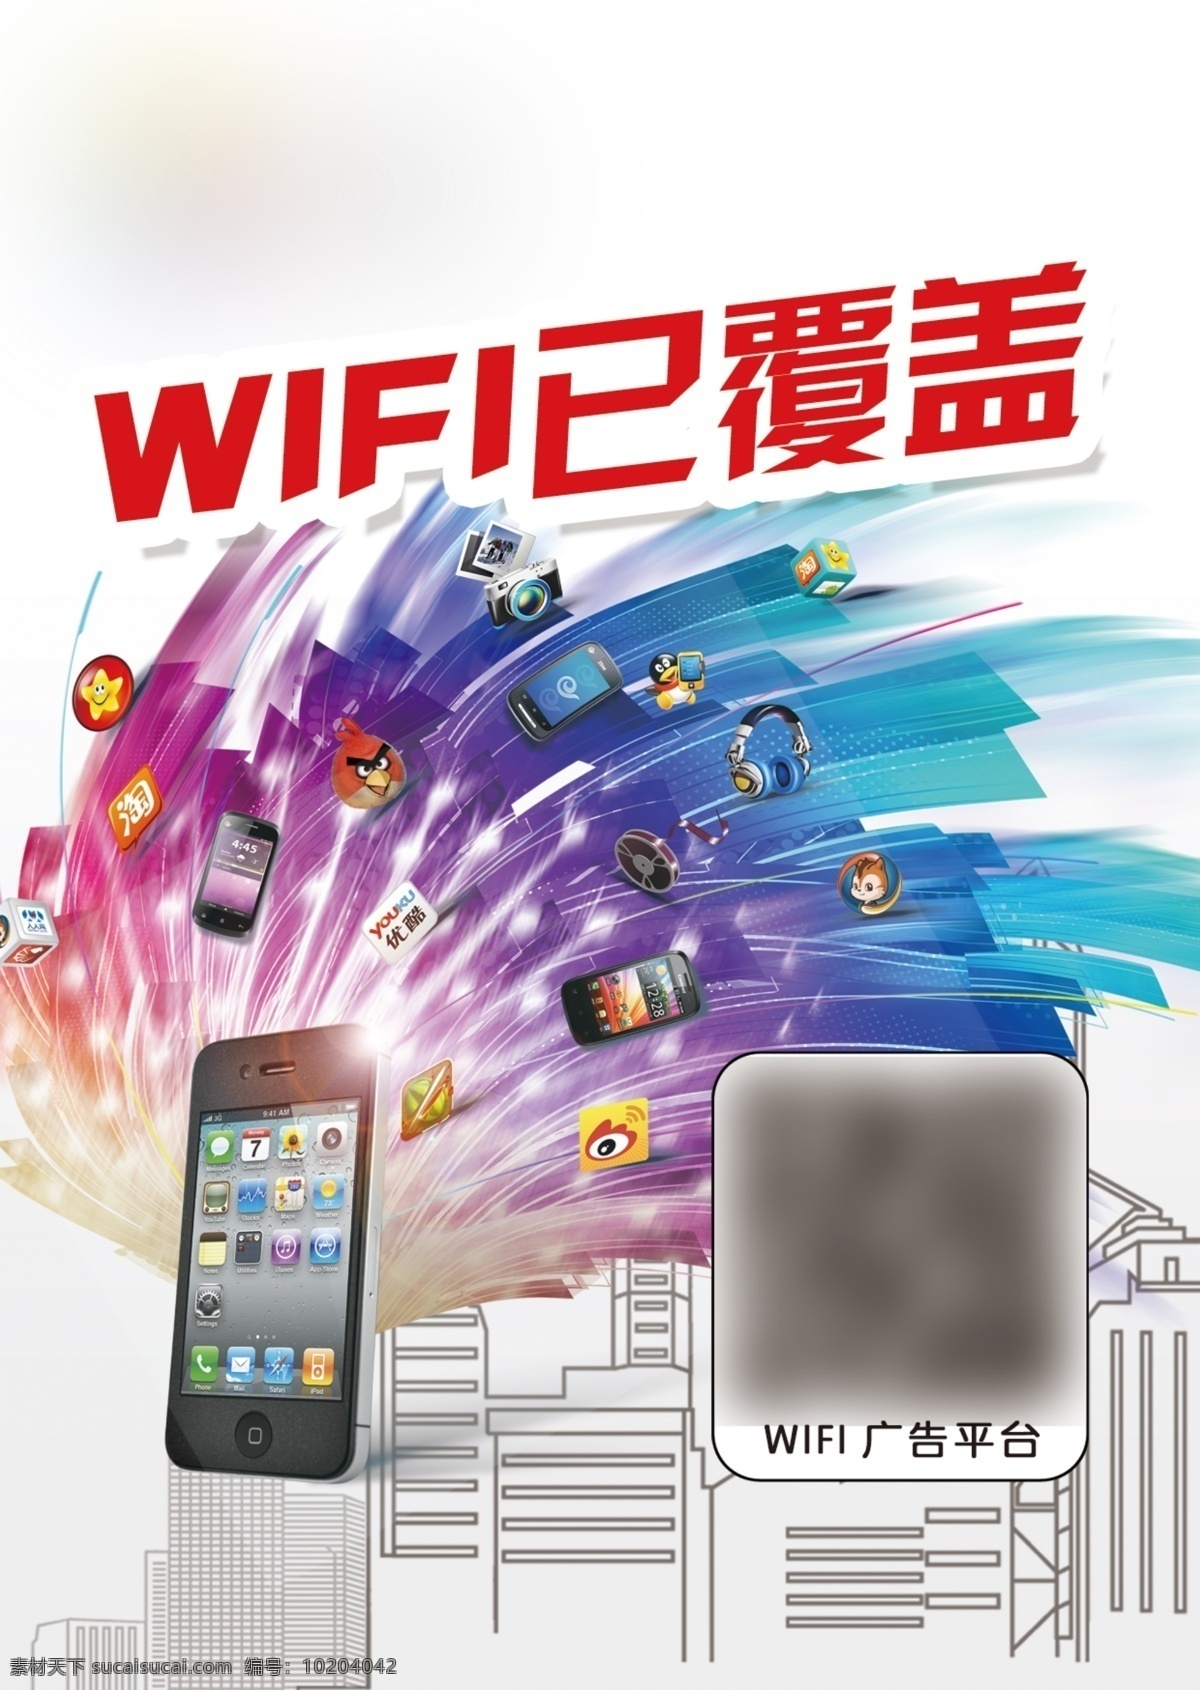 手机 wifi 已 覆盖 城市 素描 五彩 广告 平台 psd下载 白色